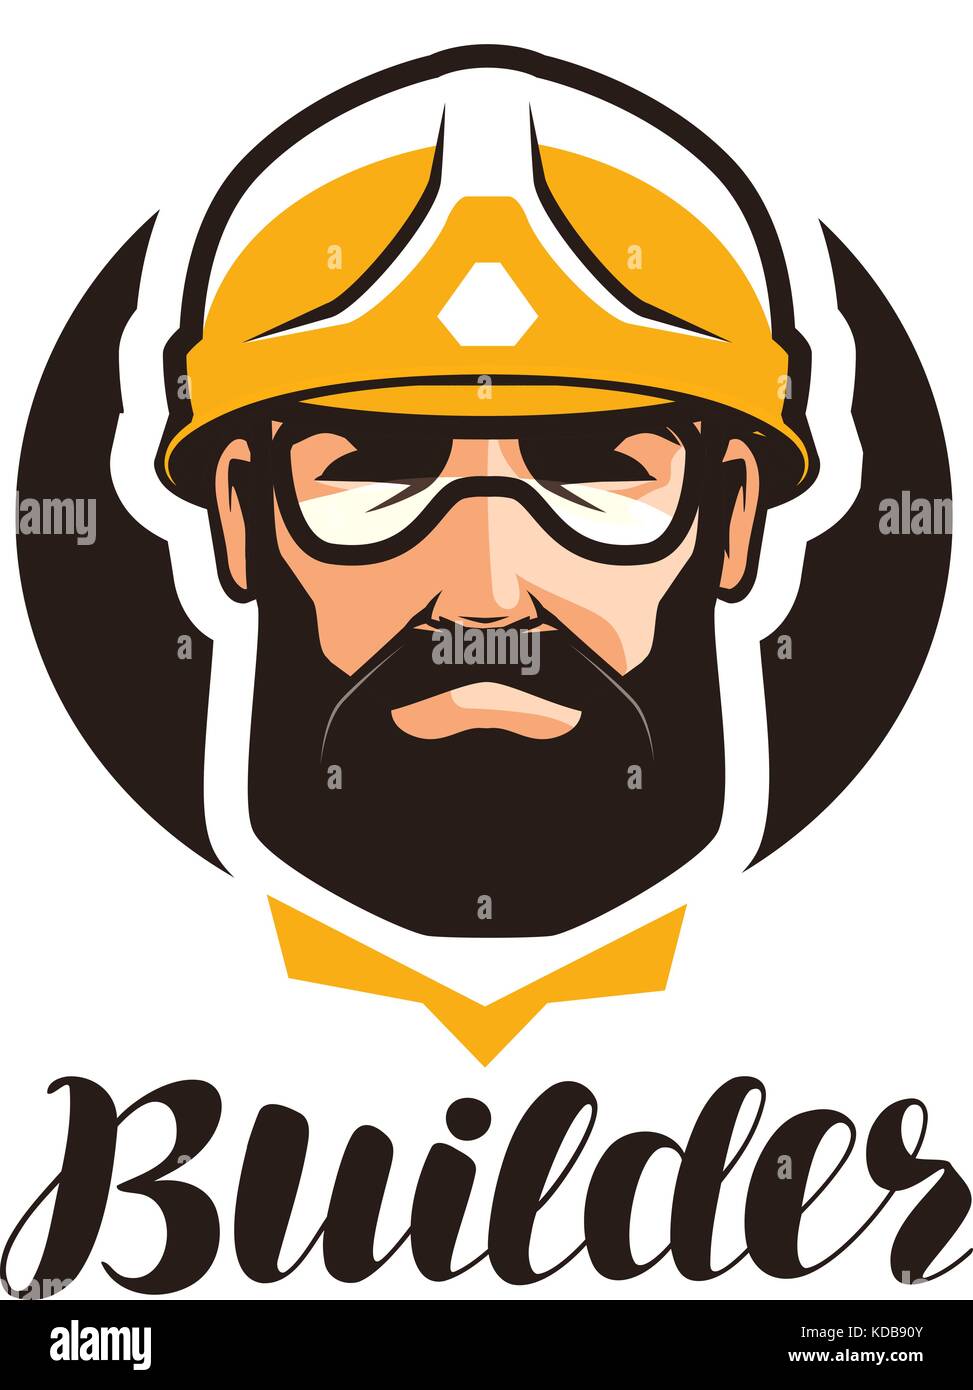 Builder, constructor logo. Industry, support, service, repair, overhaul icon or symbol. Portrait of worker in helmet Stock Vector